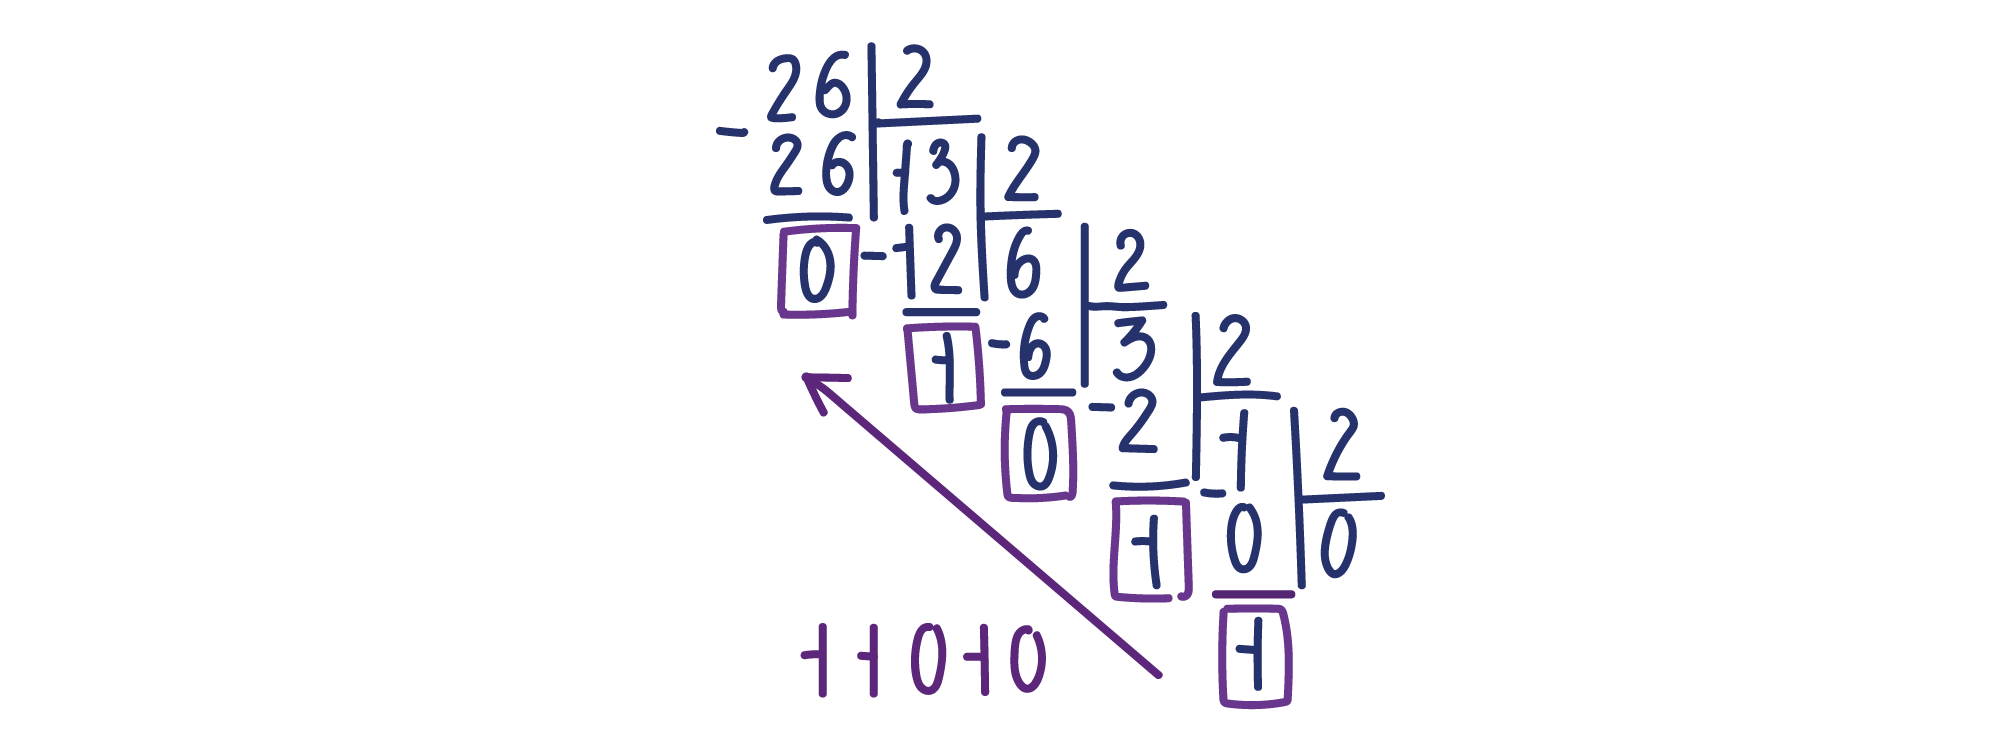 Перевод десятичного числа в двоичное